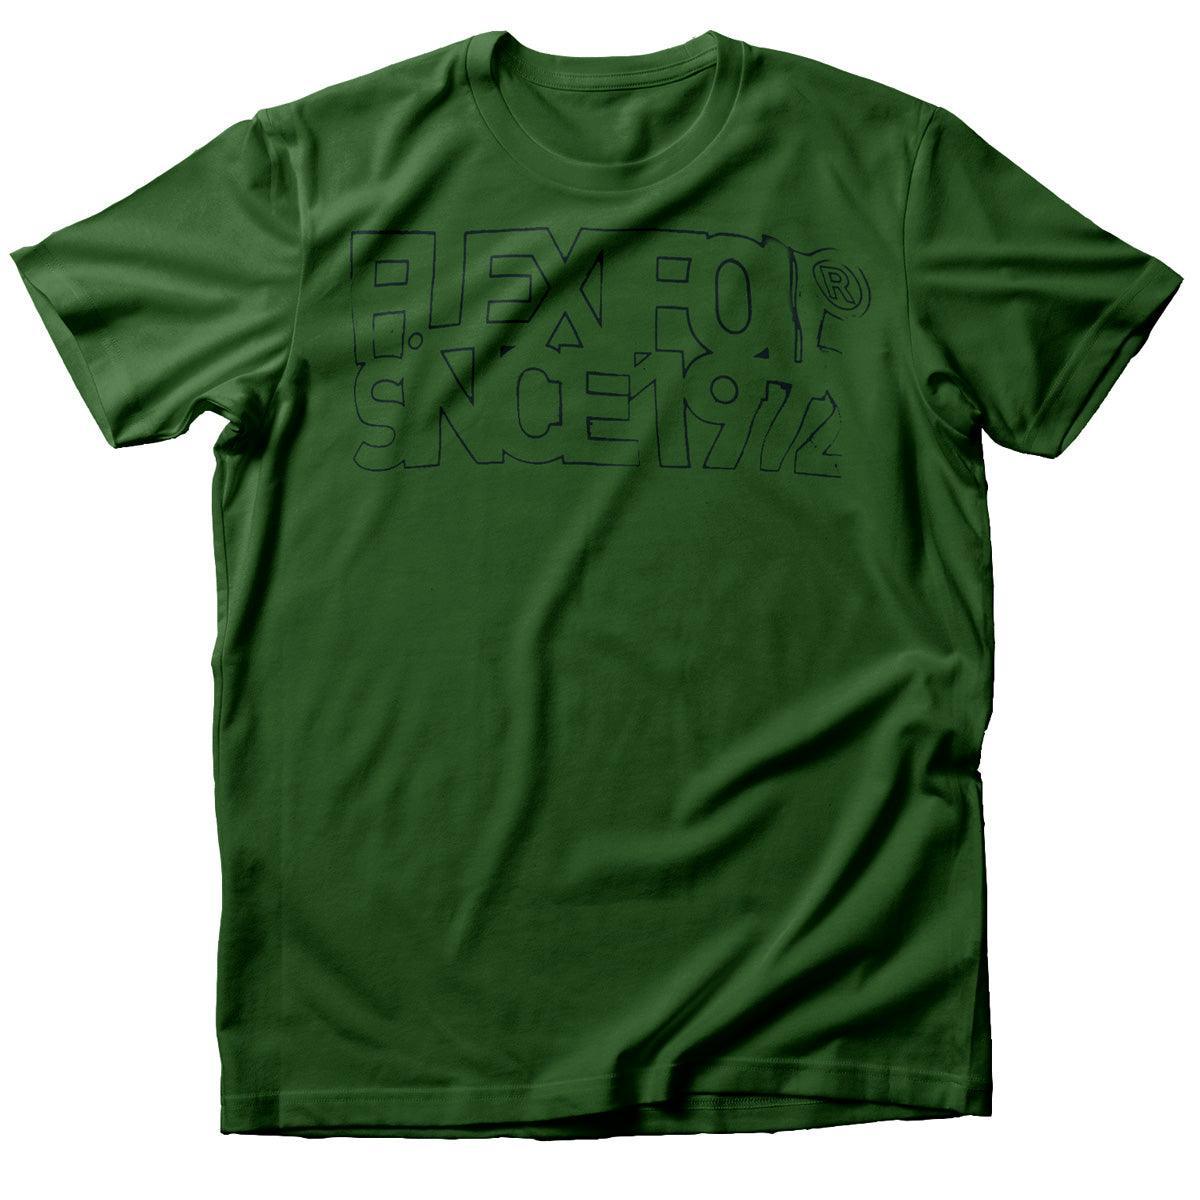 Flexifoil Jones T-Shirt - Powerkiteshop